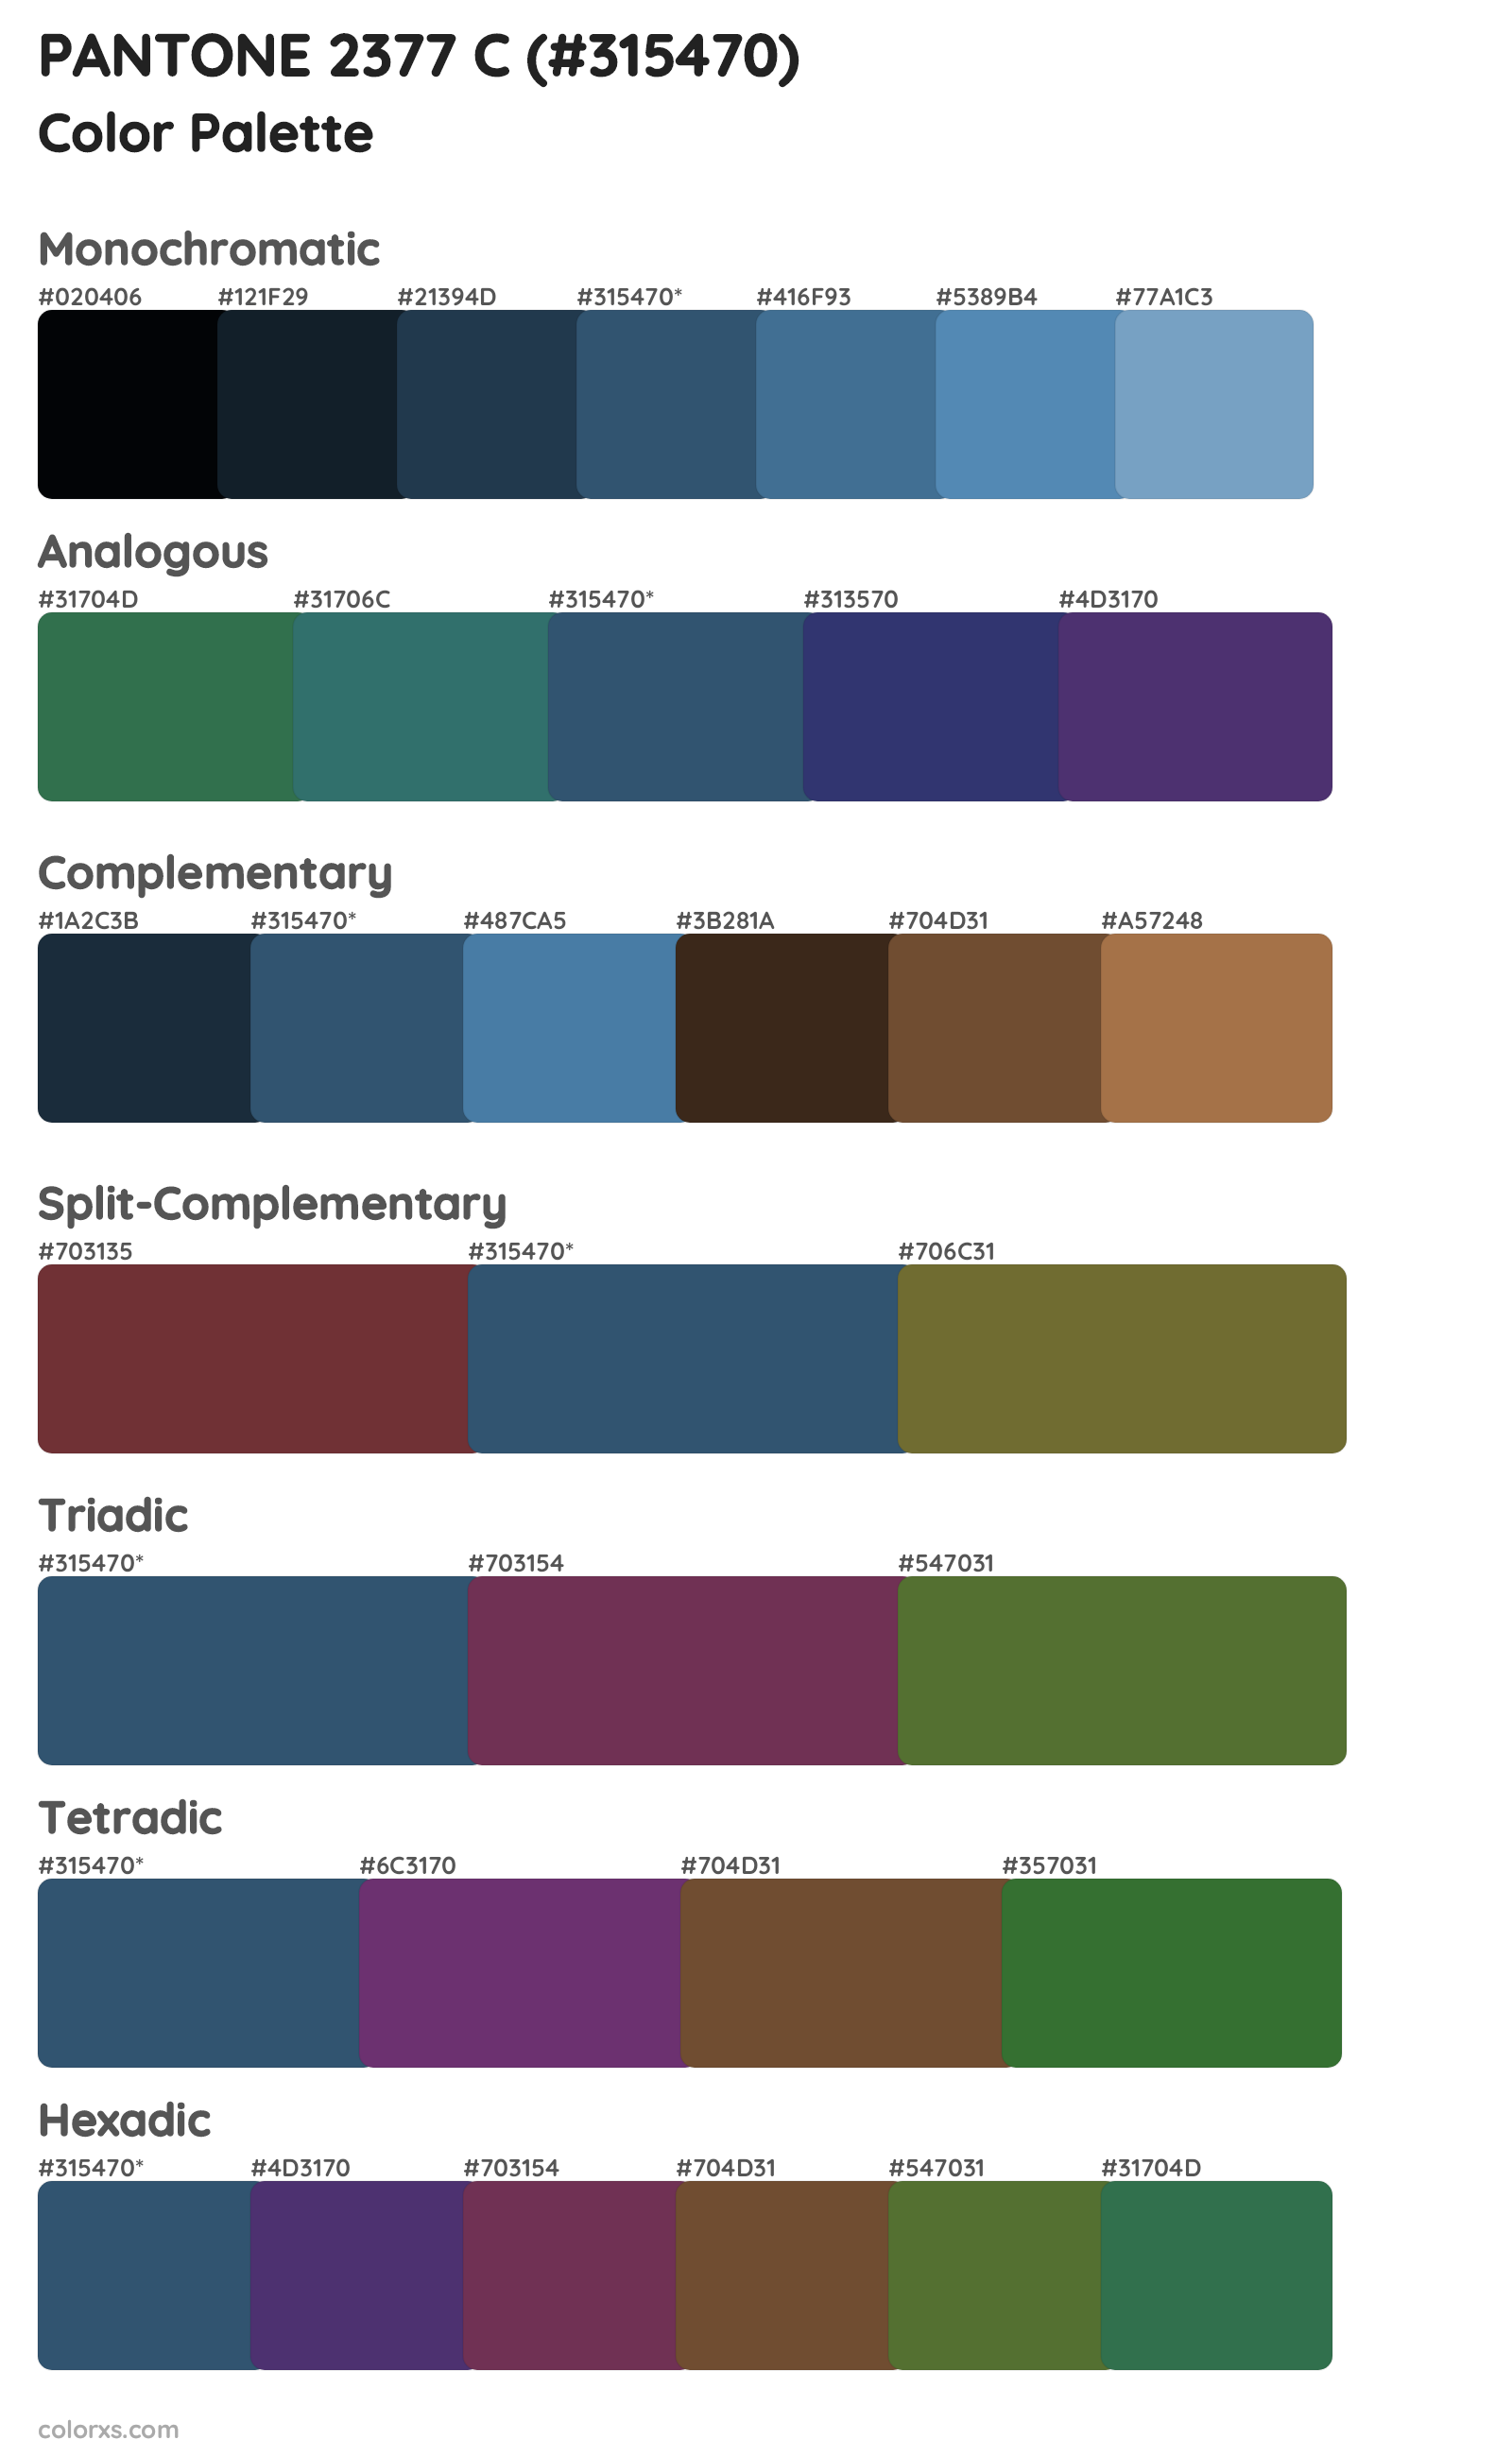 PANTONE 2377 C Color Scheme Palettes